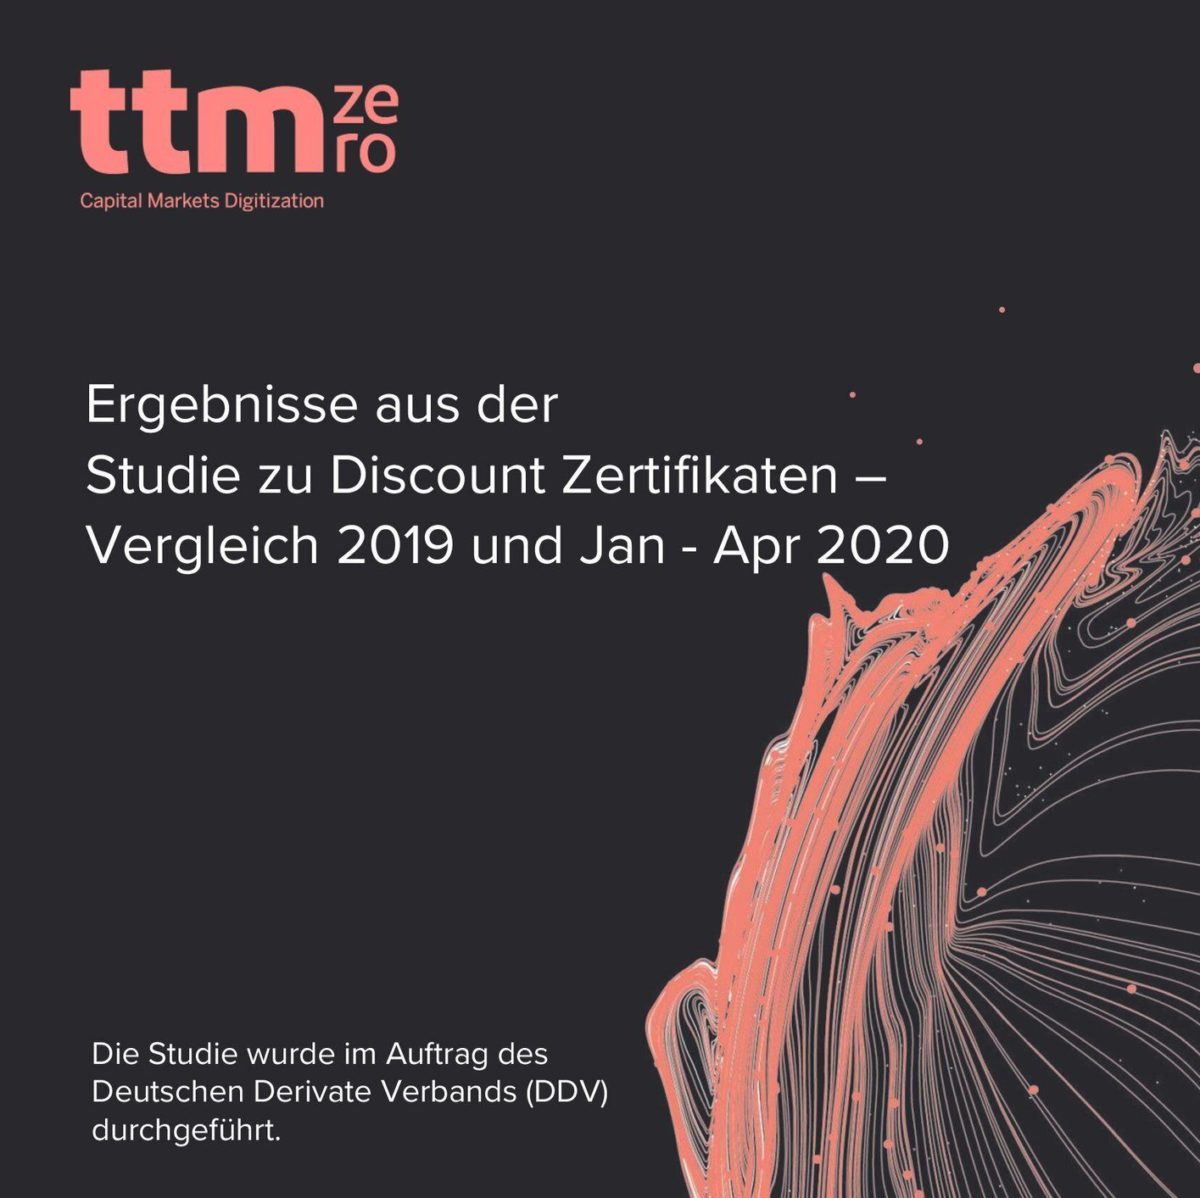 Präsentation_zu_Discount_Zertifikaten_2019_2020_FirstPage